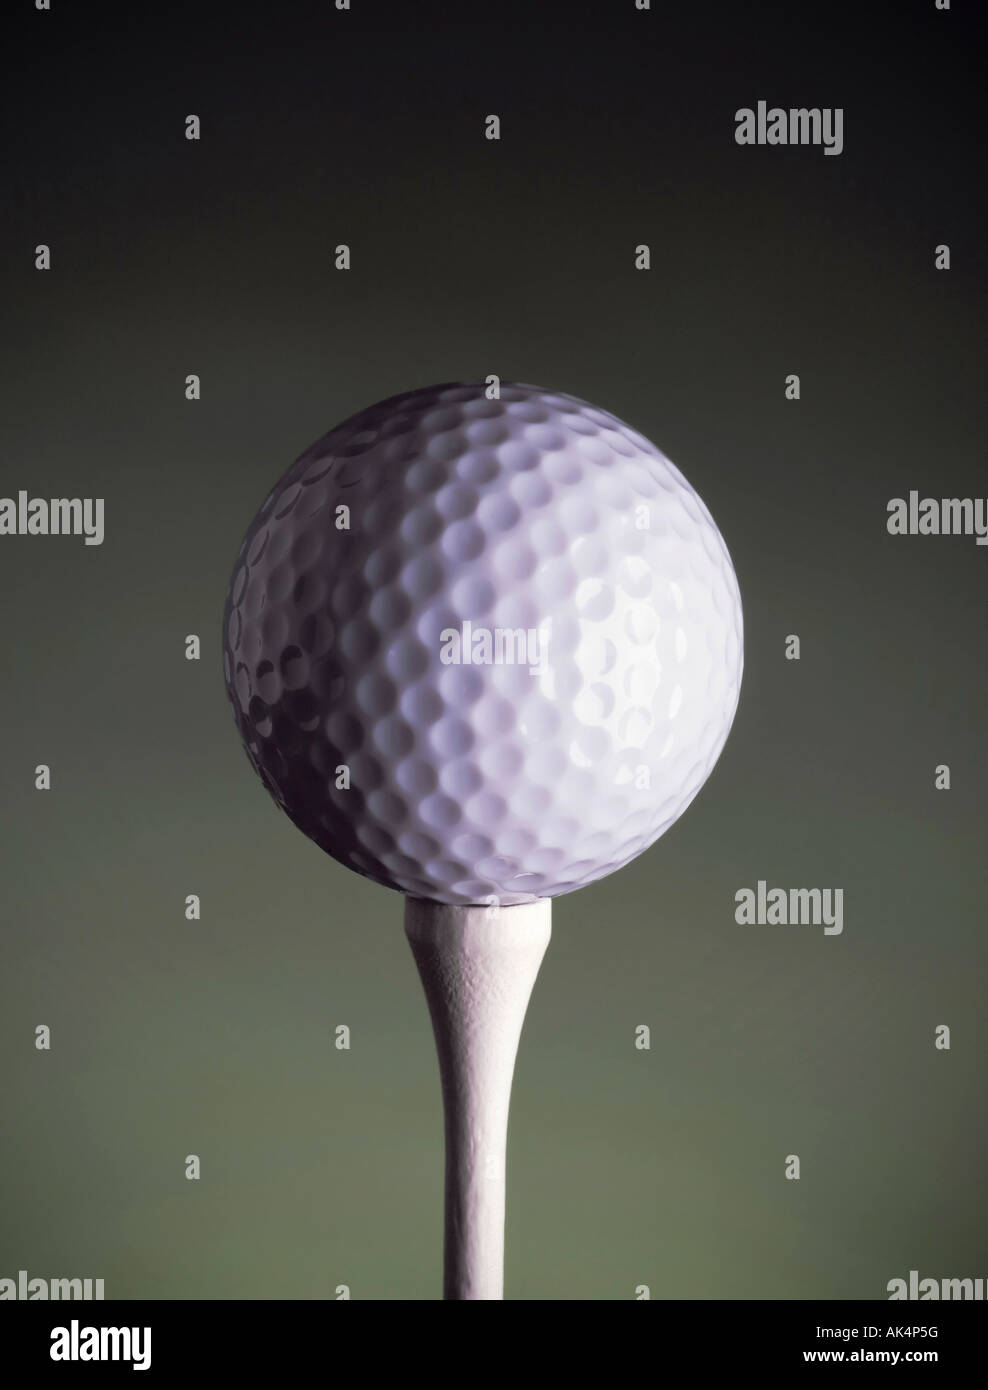 golf ball on tee Stock Photo